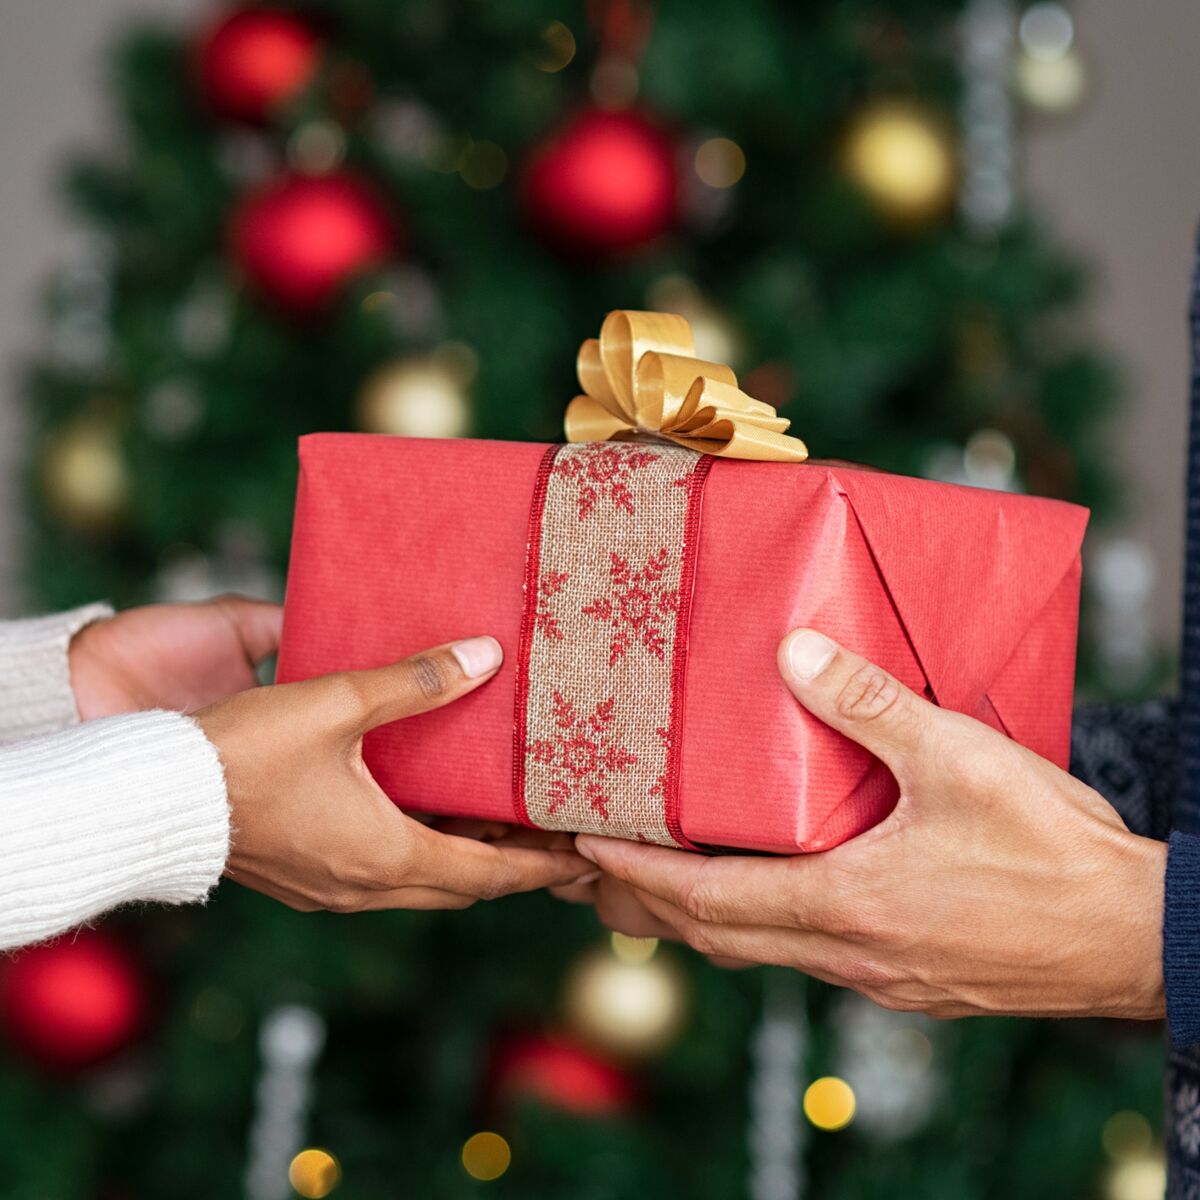 Témoignages : Radins, sans imagination, déçus Les cadeaux de Noël sont  un problème pour eux